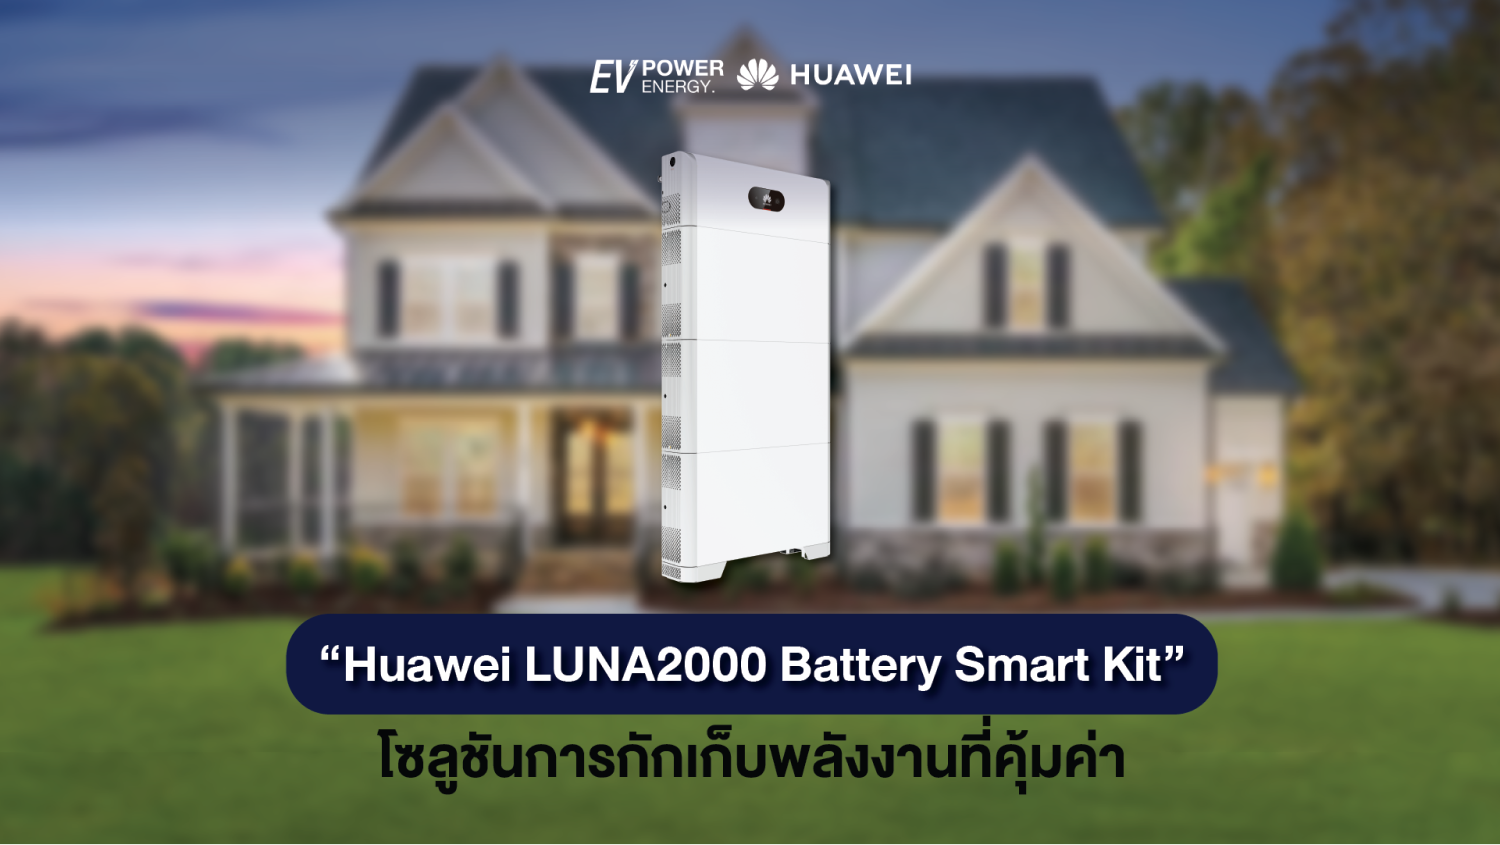 Huawei LUNA2000 Battery Smart Kit โซลูชันการกักเก็บพลังงานที่คุ้มค่า